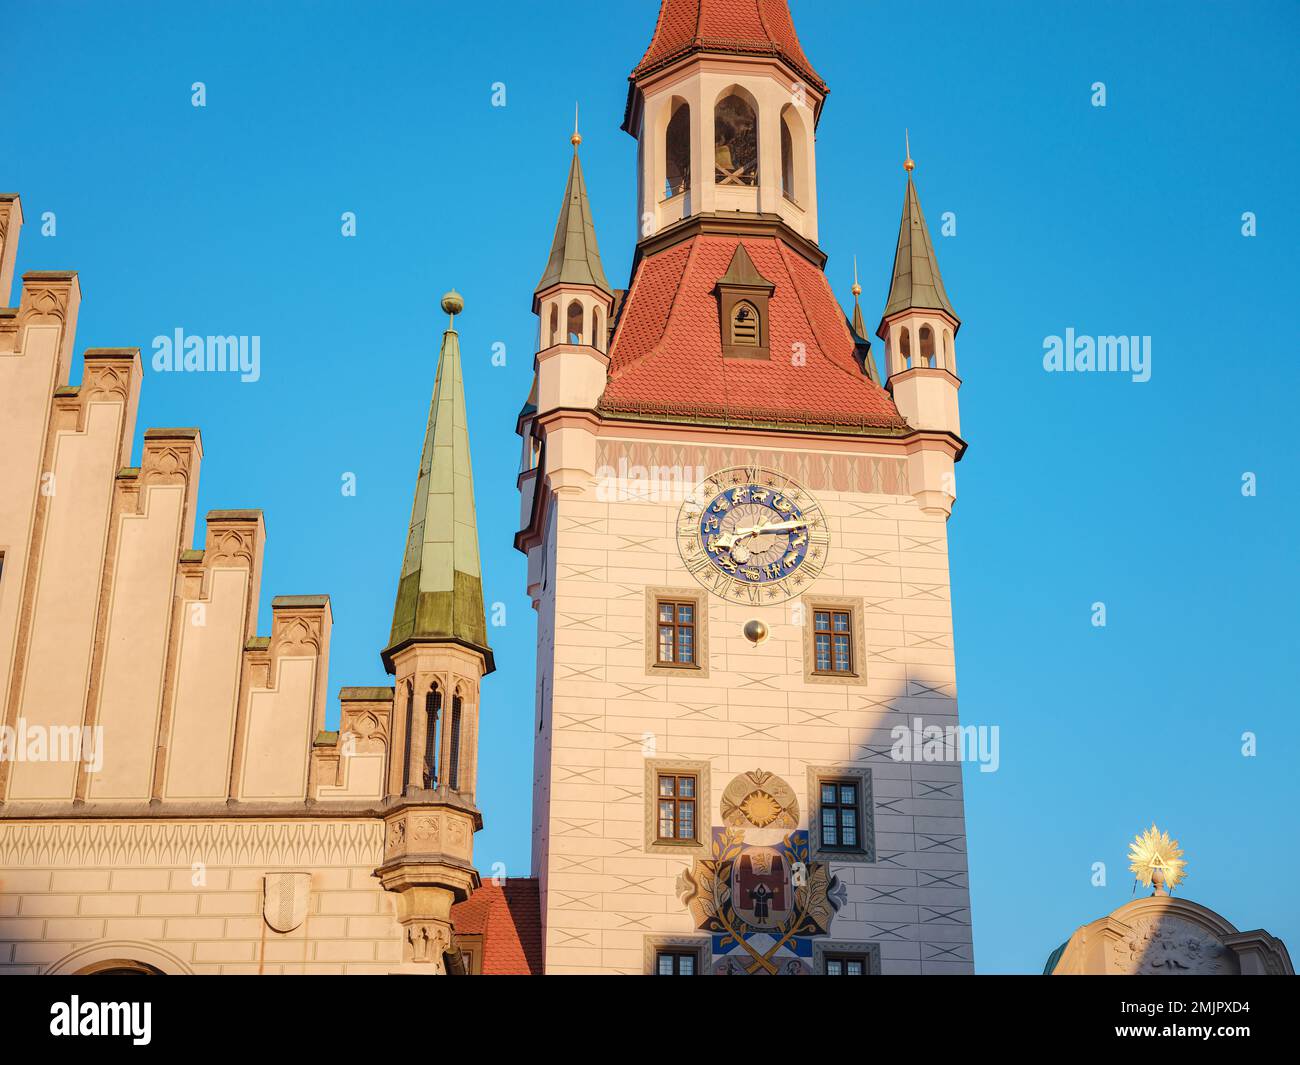 Altes Rathaus das Rathaus aus dem 14. Jahrhundert wurde durch Blitze und Bombardierungen beschädigt und im gotischen Stil am Marienplatz München restauriert Stockfoto